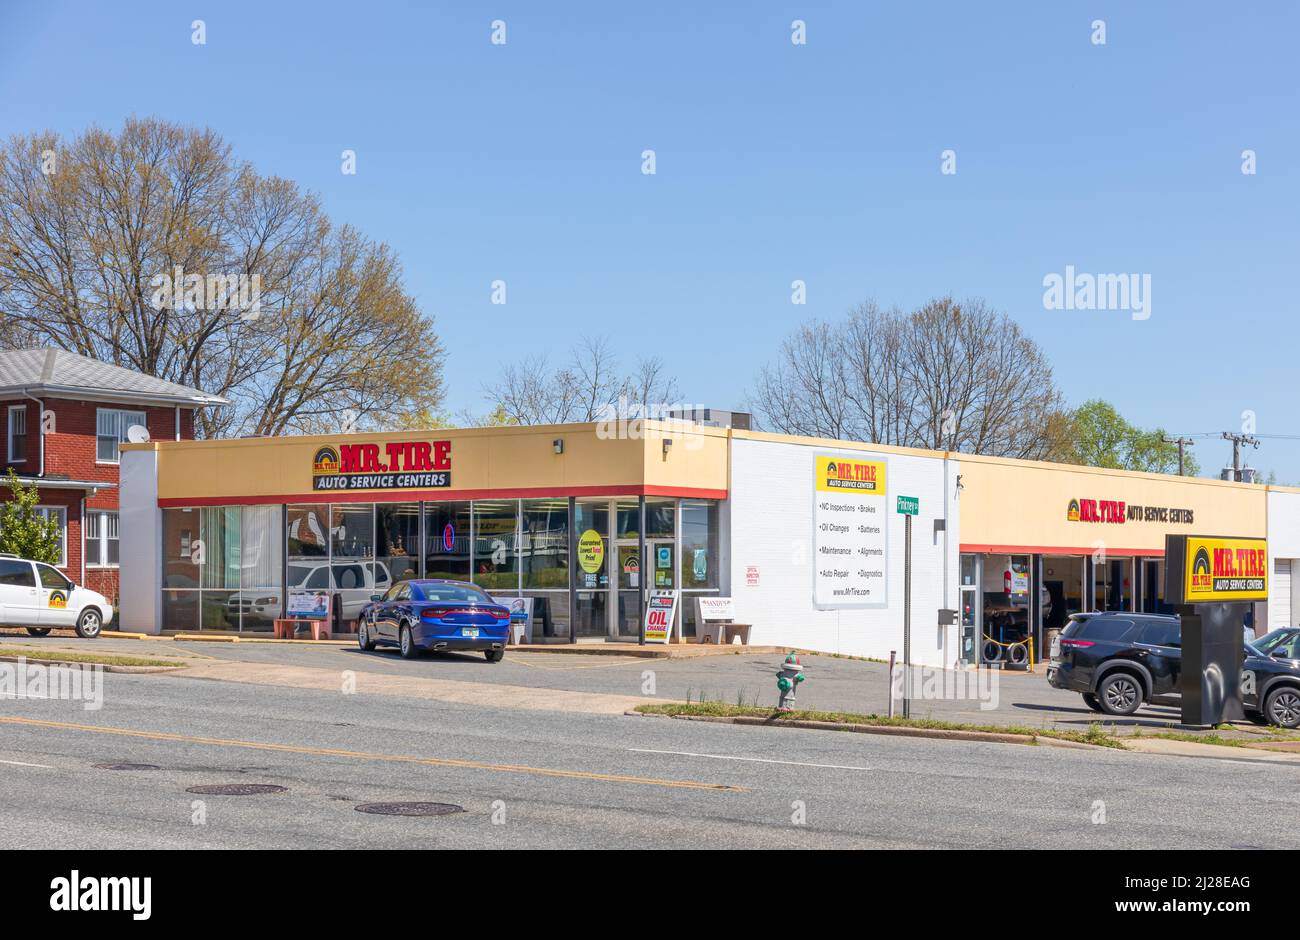 SHELBY, NC, USA-28 MARS 2022: A MR tire Auto Service Center, plusieurs enseignes, bâtiment, parking, vitrine. Banque D'Images